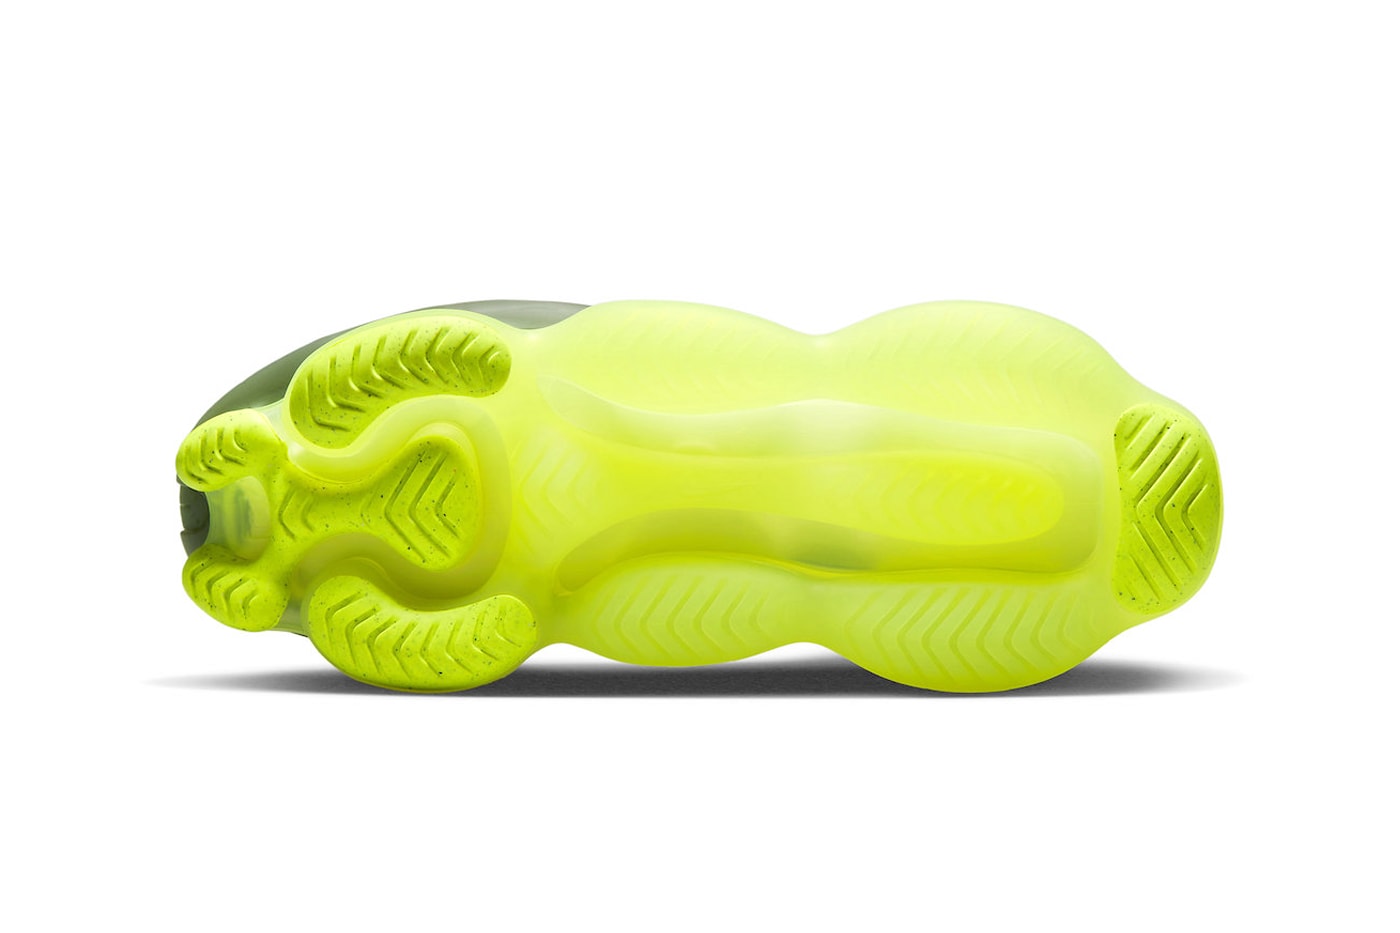 ナイキからネオンイエローのソールが目を惹くエアマックススコーピオン “ベアリーボルト”が登場 Nike Air Max Scorpion "Barely Volt" Receives a Release Date DJ4701-300 Jade Horizon/Barely Volt-Cargo Khaki-Sequoia snaekers show flyknit bubble